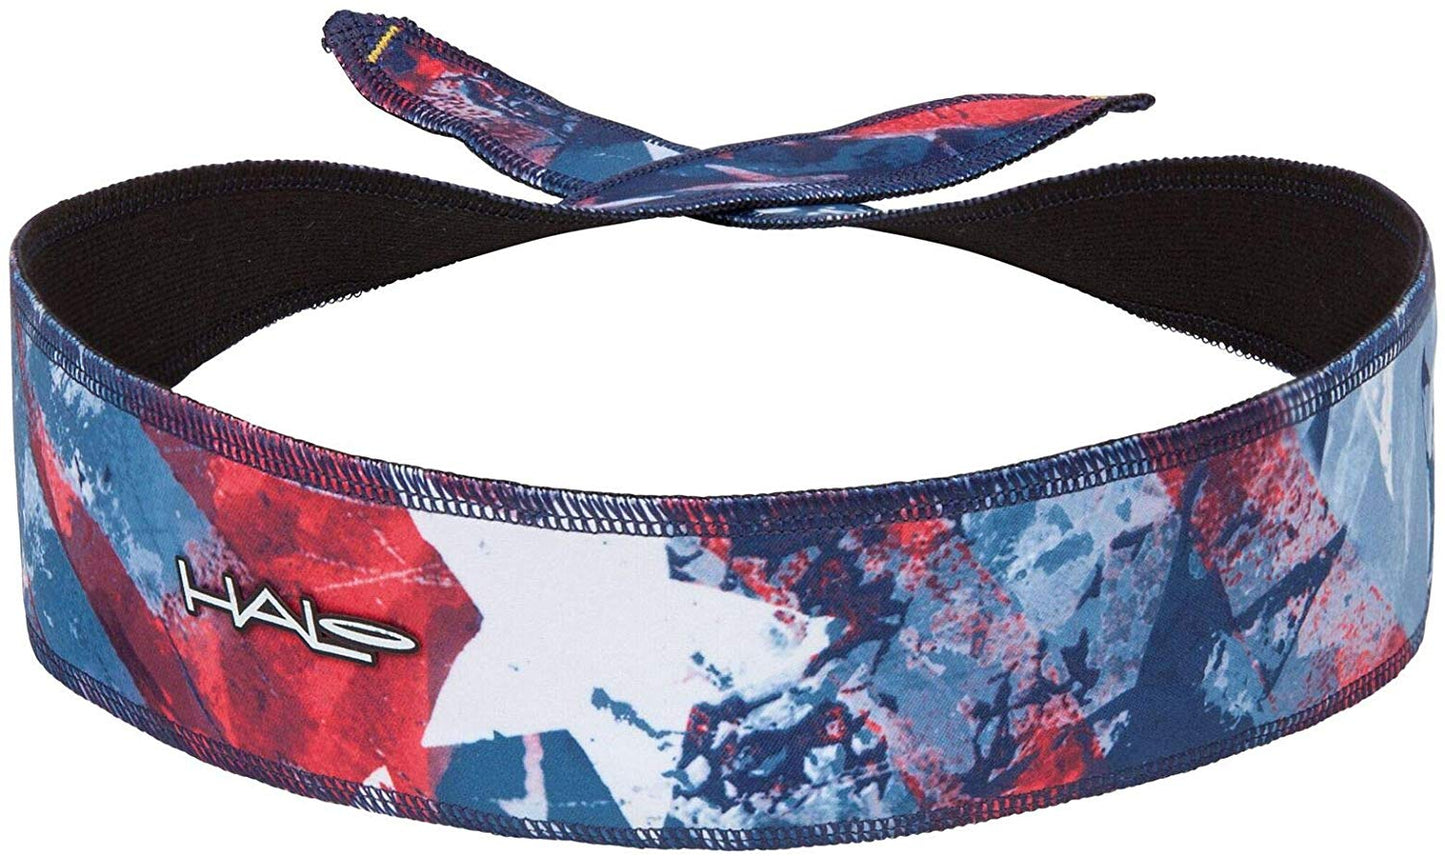 Halo Headband - tie version (Solid Colors)